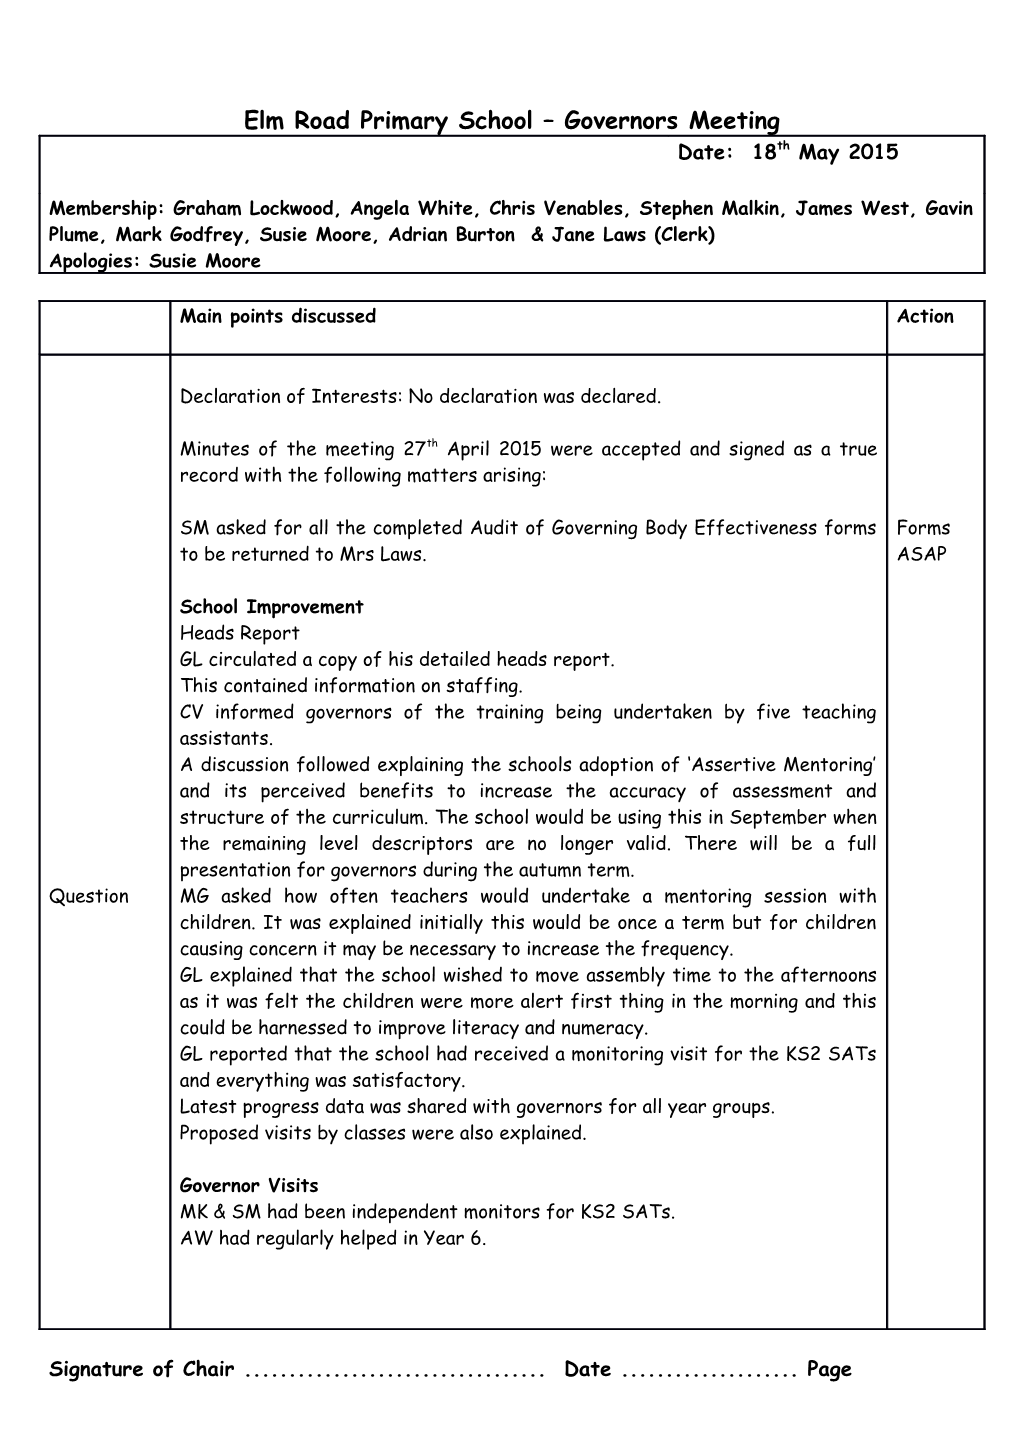 Elm Road Primary School - Resource Committee Report s1